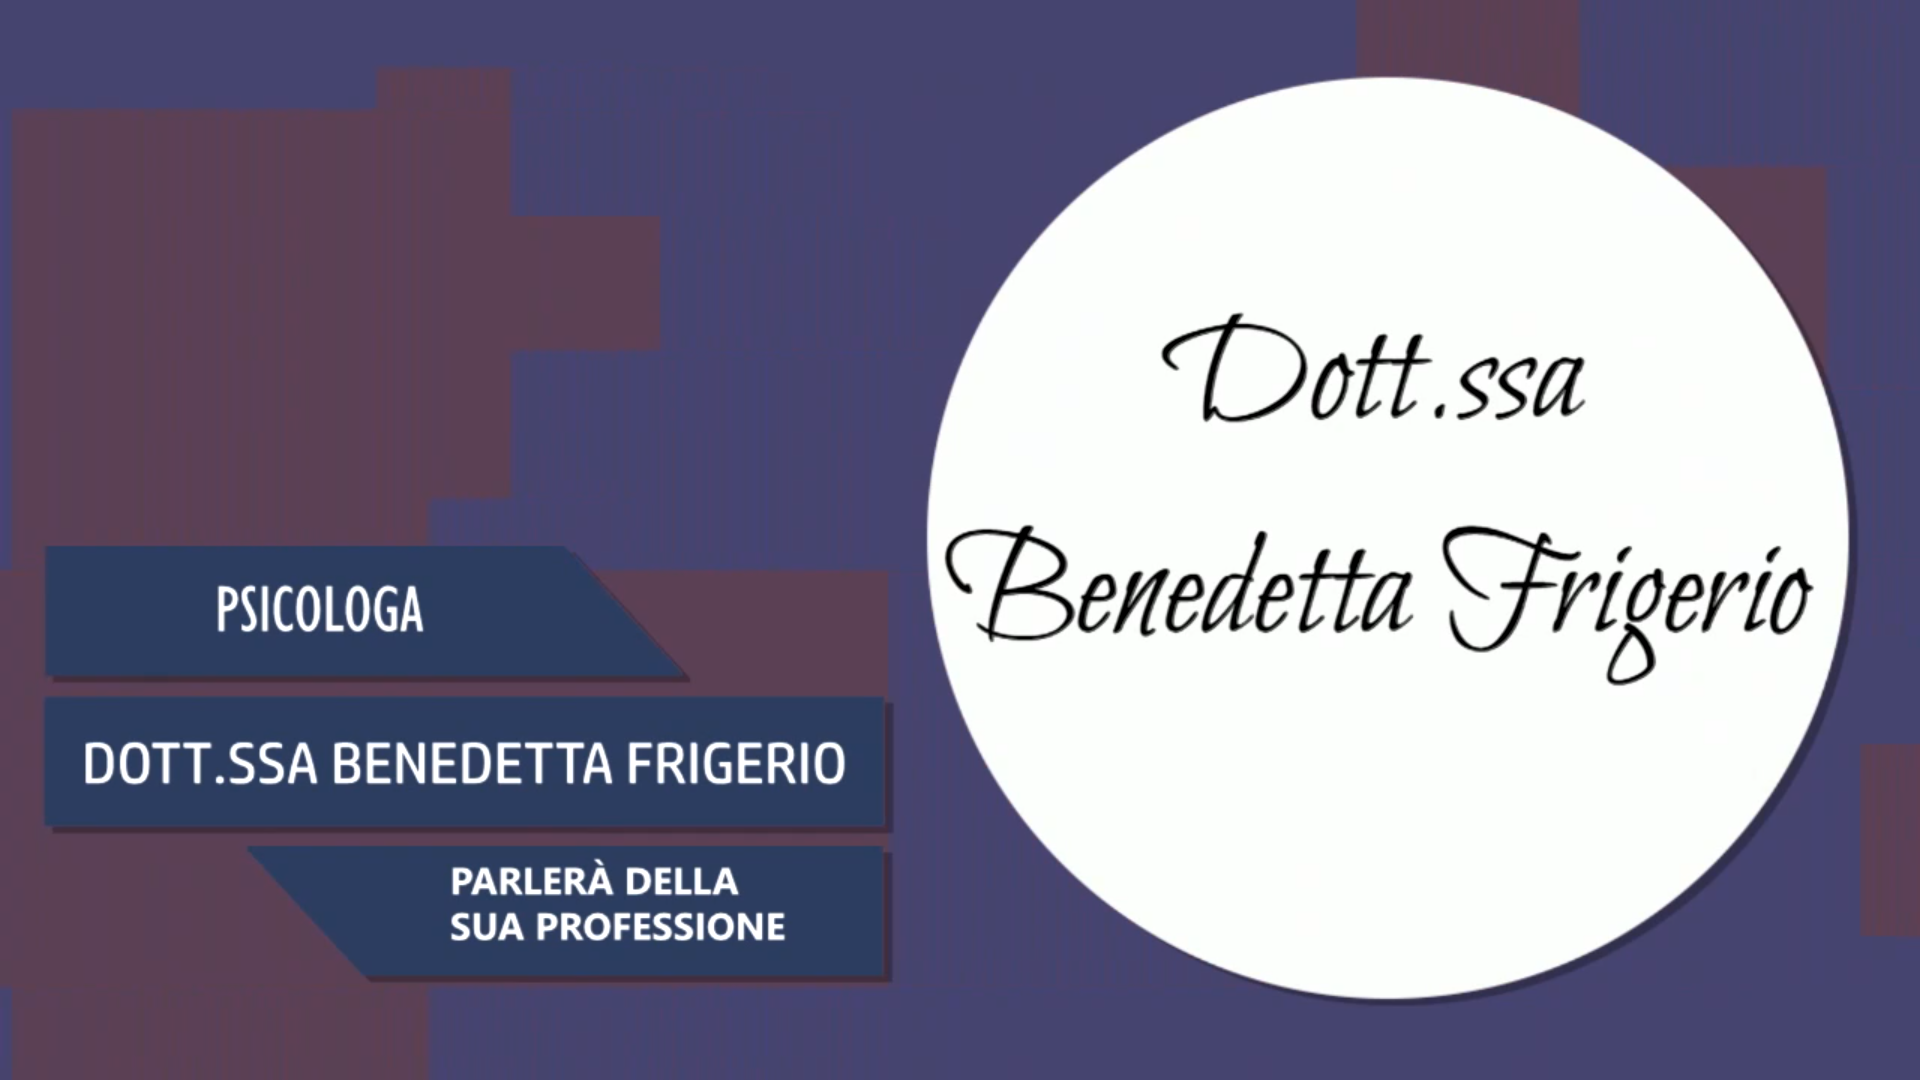 Intervista alla Dott.ssa Benedetta Frigerio – Parlerà della sua professione